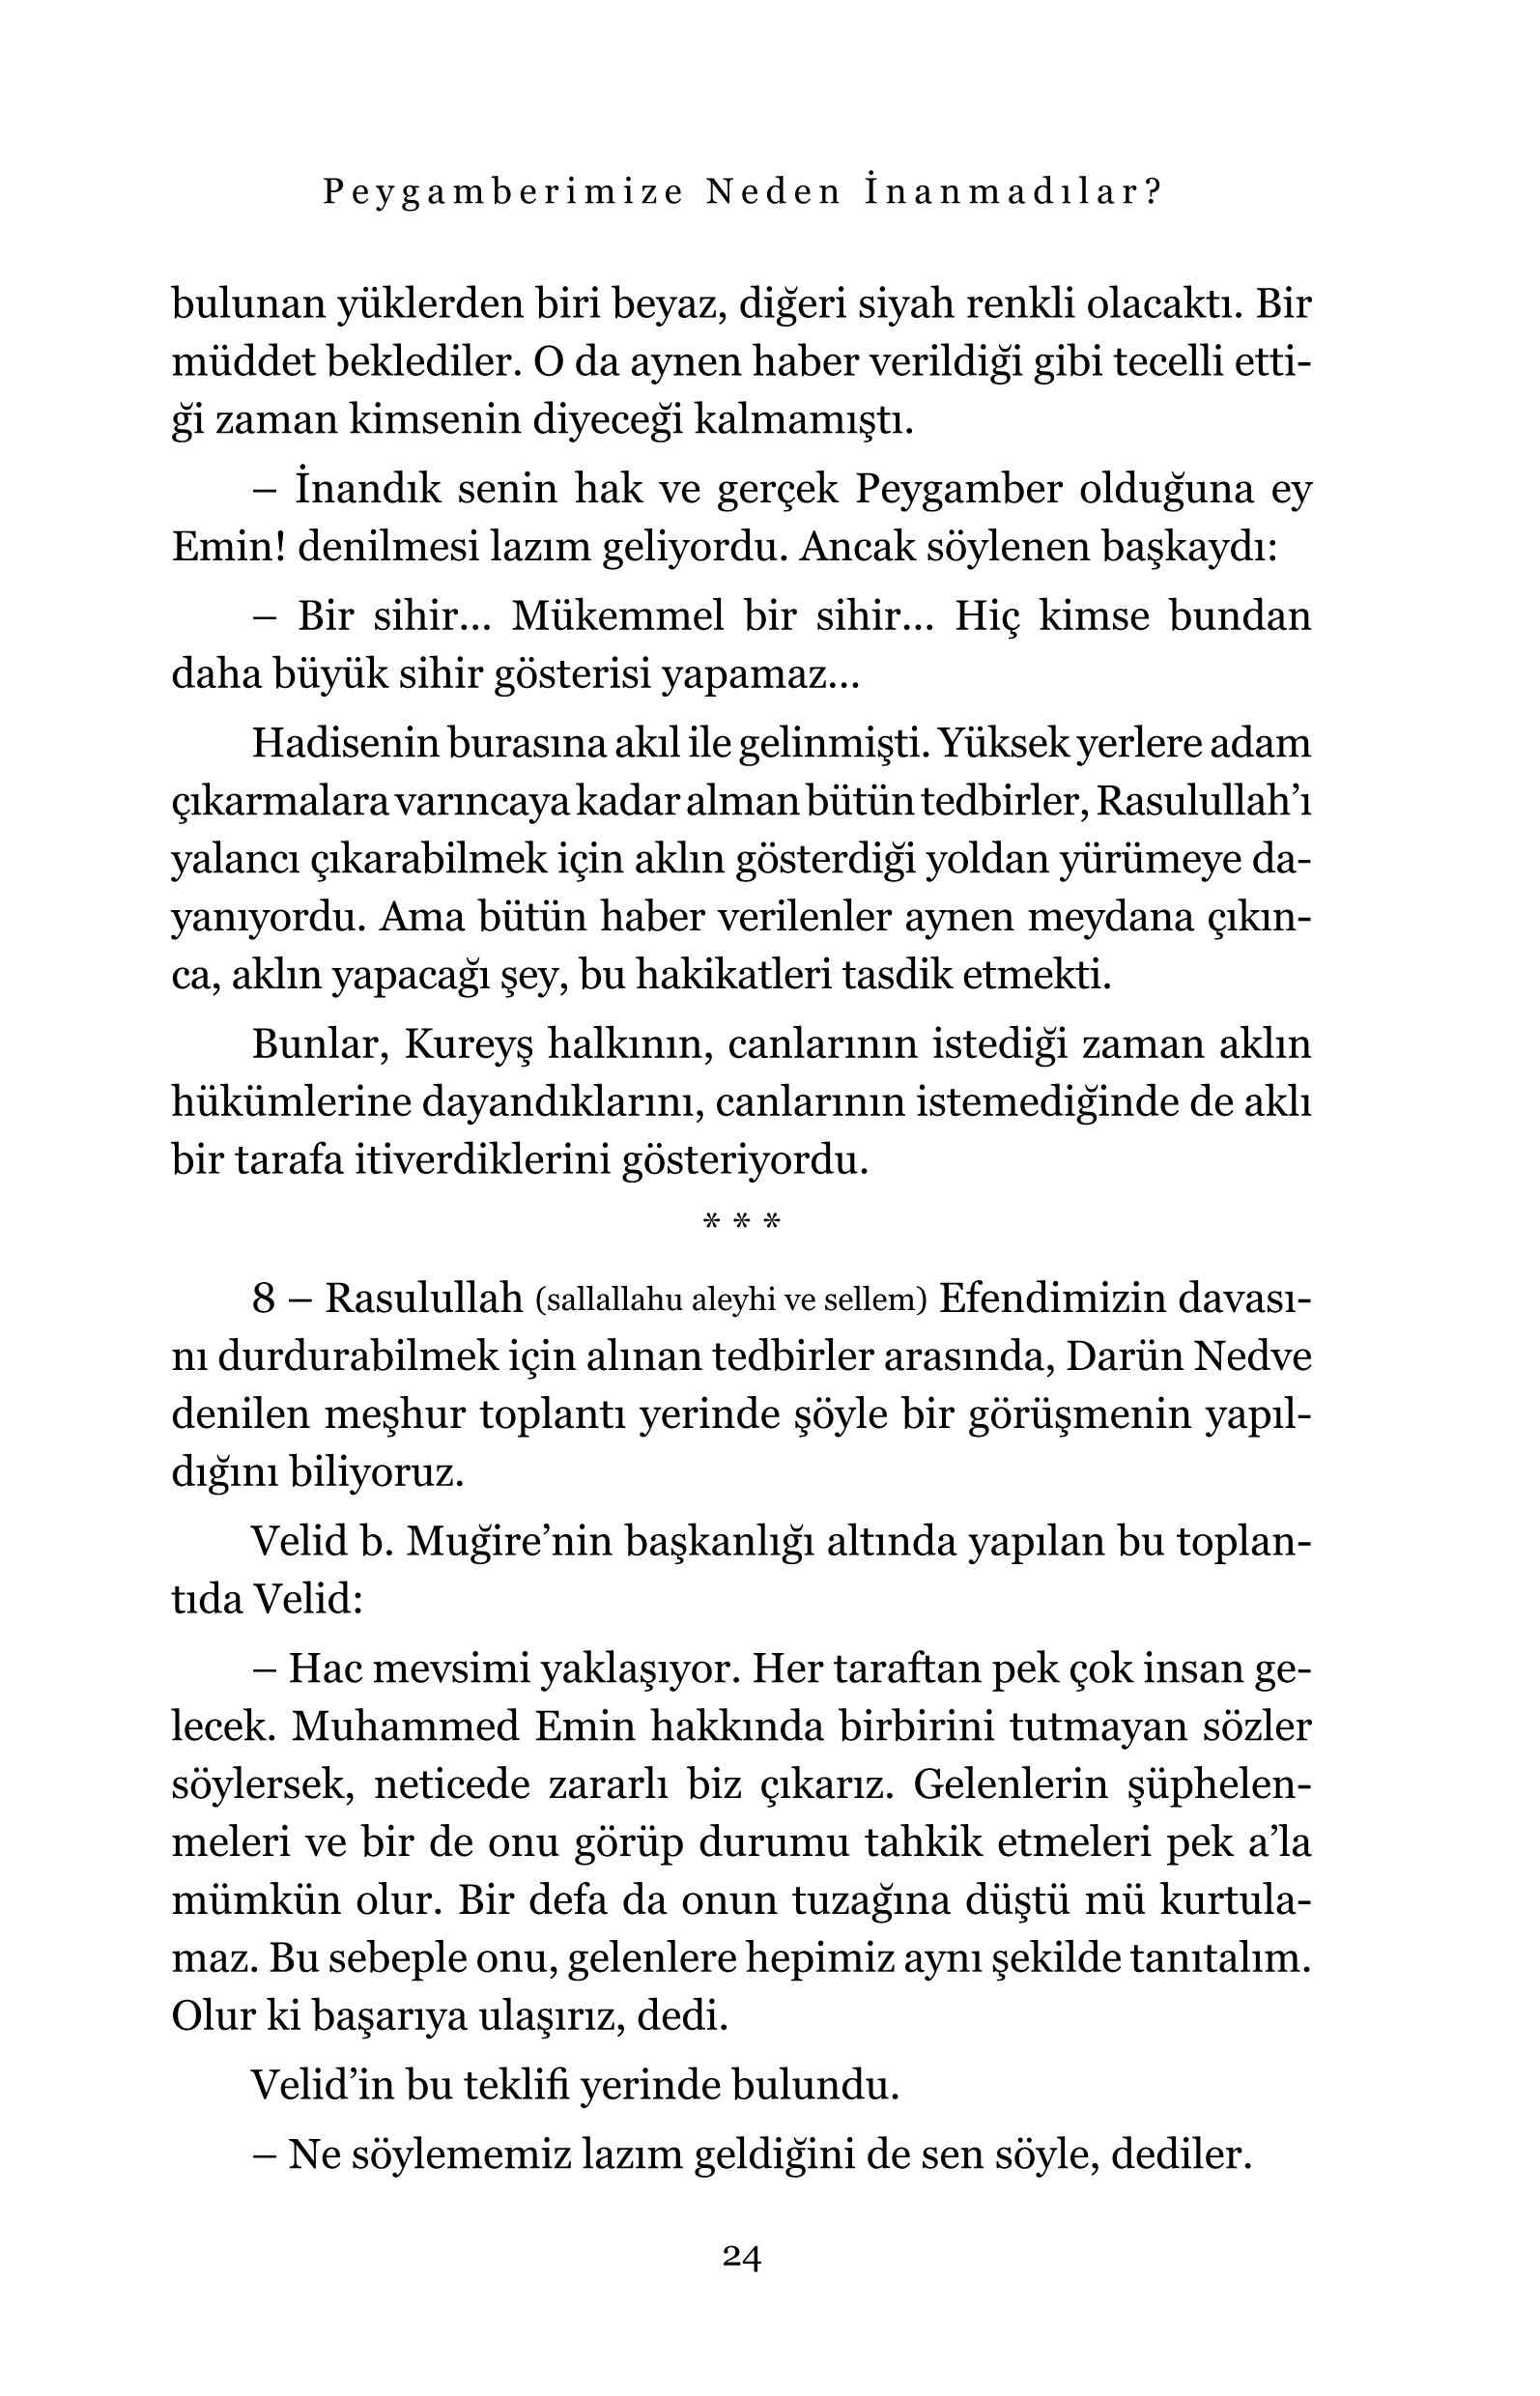 Ahmet Lutfi Kazanci - Peygamberimize Neden inanmadilar - IsikYayinlari.pdf, 296-Sayfa 